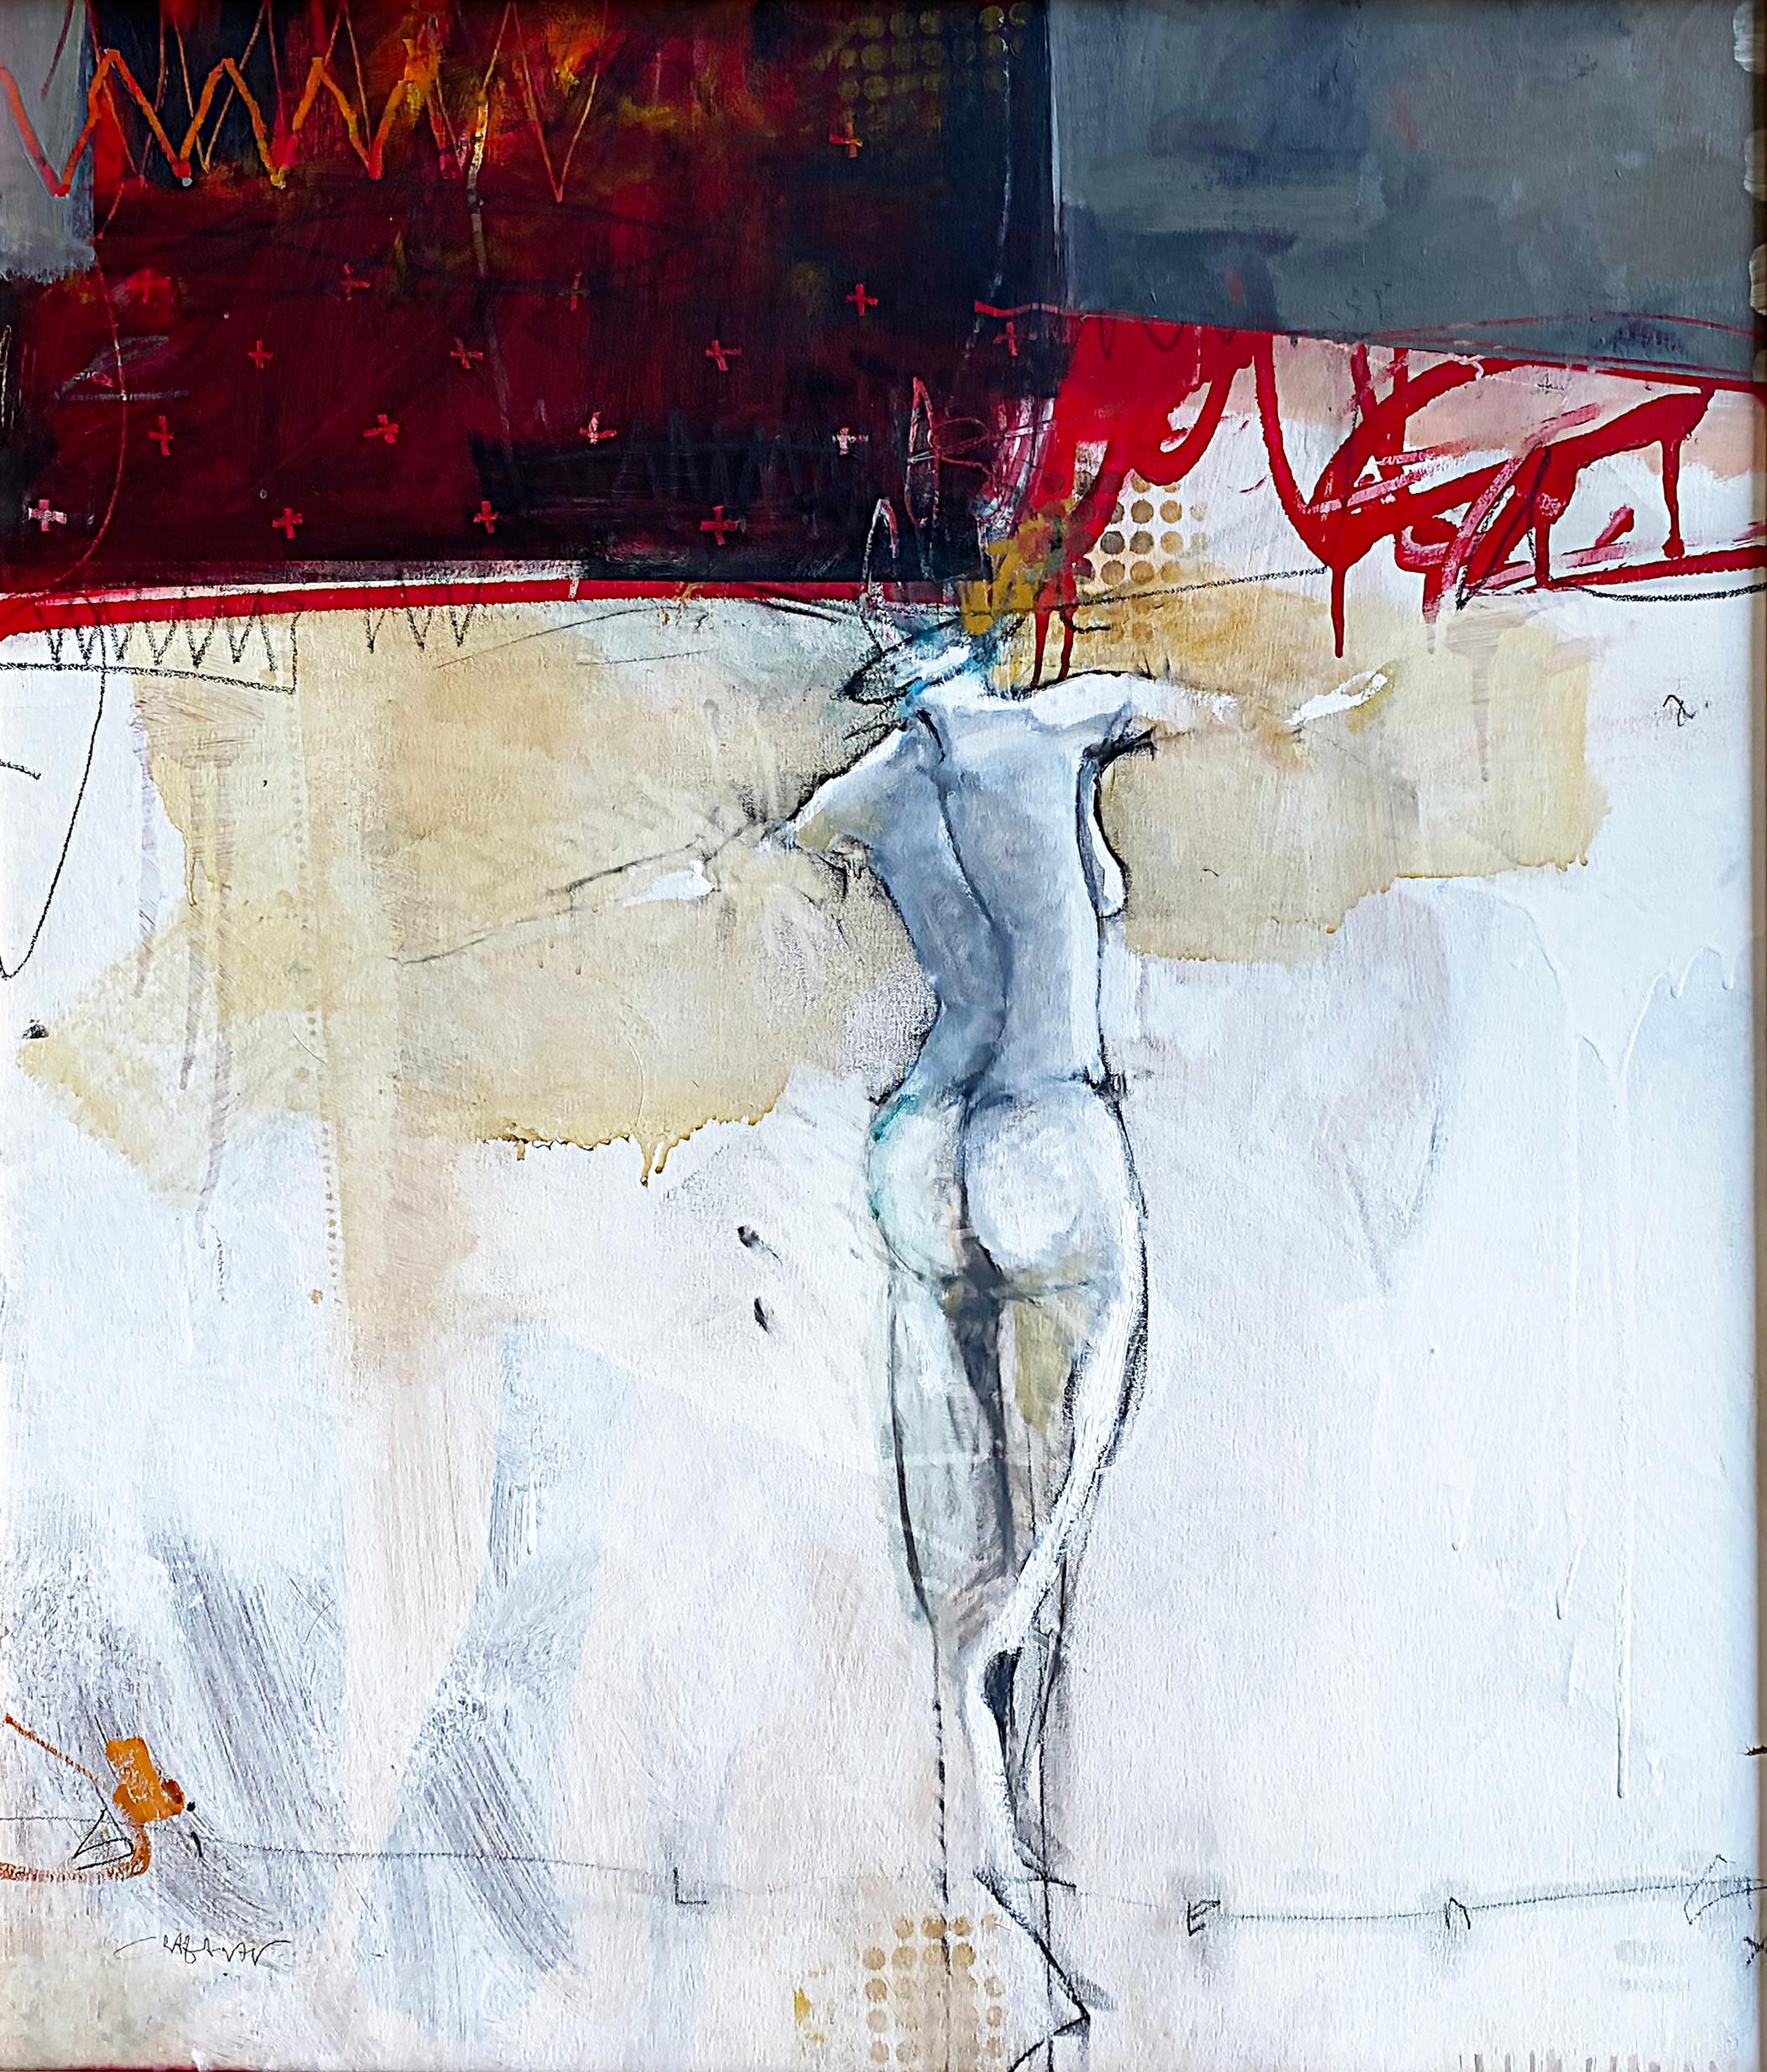 Peinture figurative abstraite de Craig Allen intitulée « Echo »

Est proposée à la vente une peinture abstraite figurative sur toile intitulée 